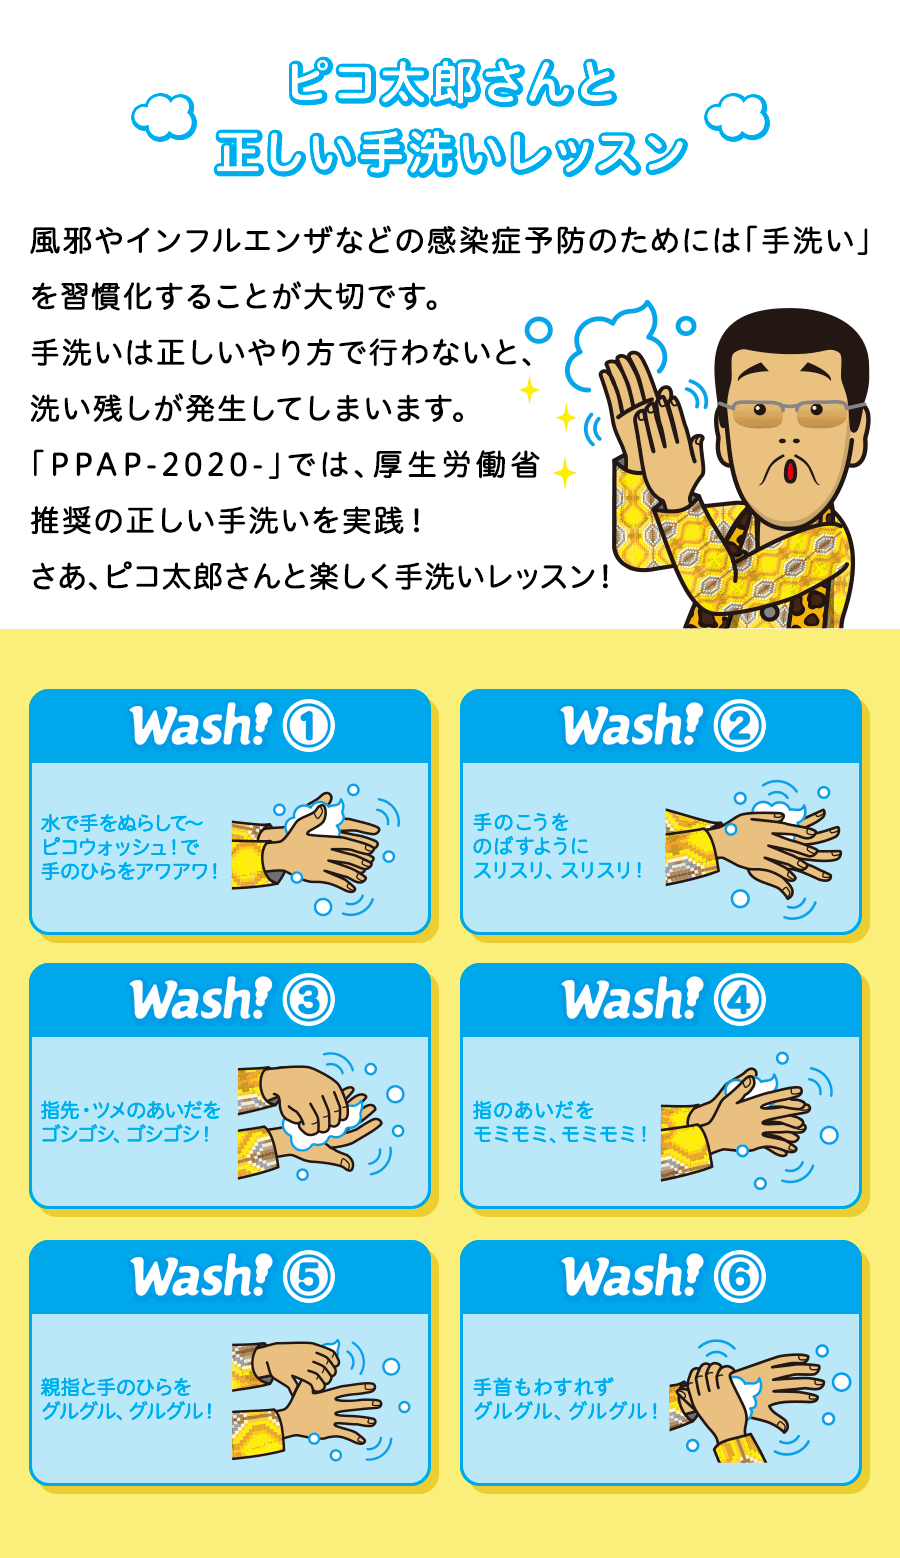 ピコ太郎さんと正しい手洗いレッスン